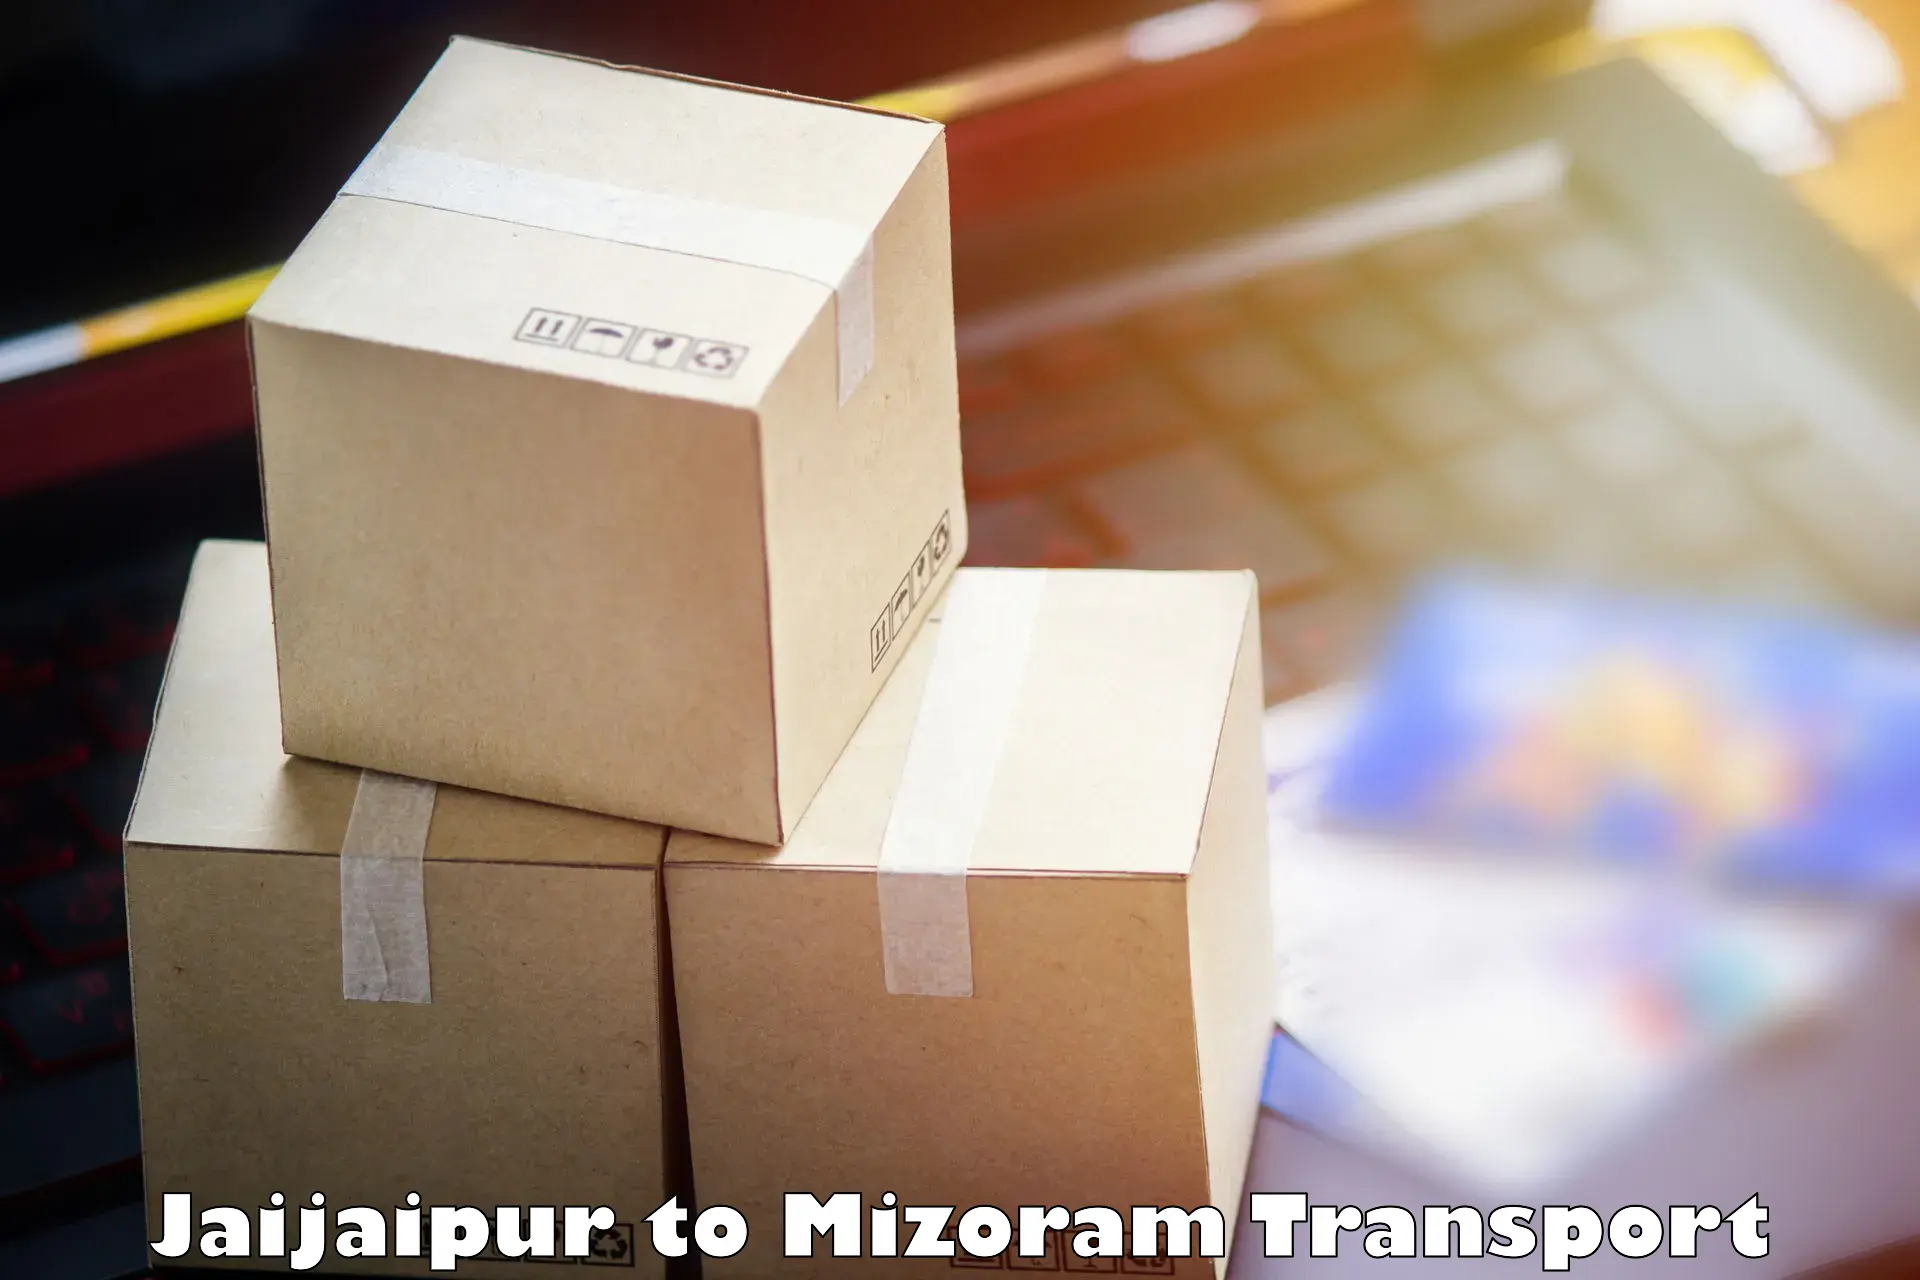 Shipping services Jaijaipur to Mizoram University Aizawl